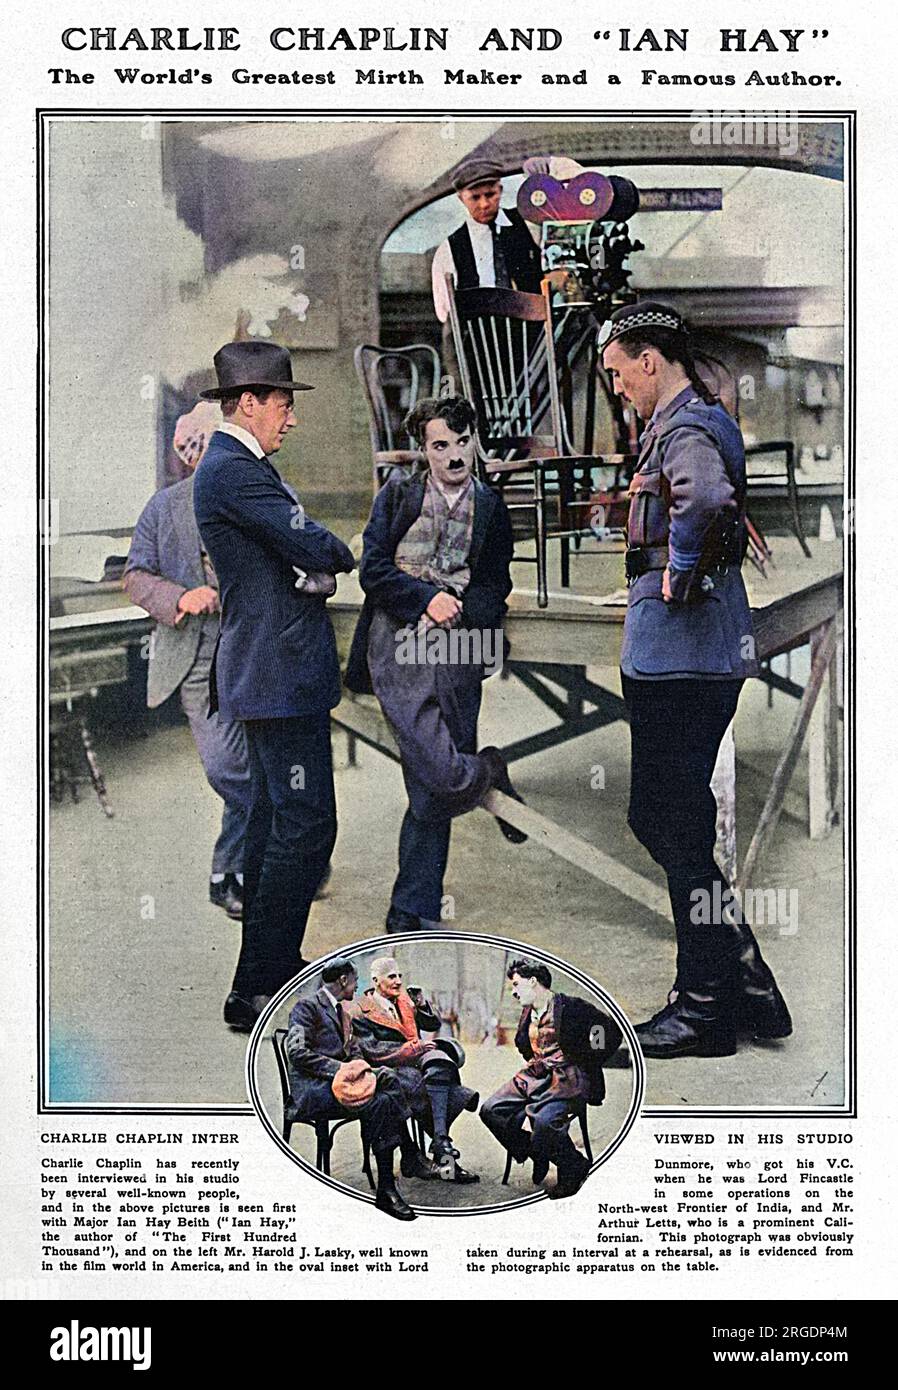 Charlie Chaplin wird in seinem Studio von Major Ian Hay Beith (der Autor der ersten Hunderttausend, ein lustiger Bericht über die Eröffnungswochen des Krieges mit der Britischen Expeditionstruppe) und links von Harold J. Lasky interviewt. bekannt in der Filmwelt Amerikas. Das Bild zeigt Chaplin mit Lord Dunmore, V.C. und Mr. Arthur Letts. Stockfoto